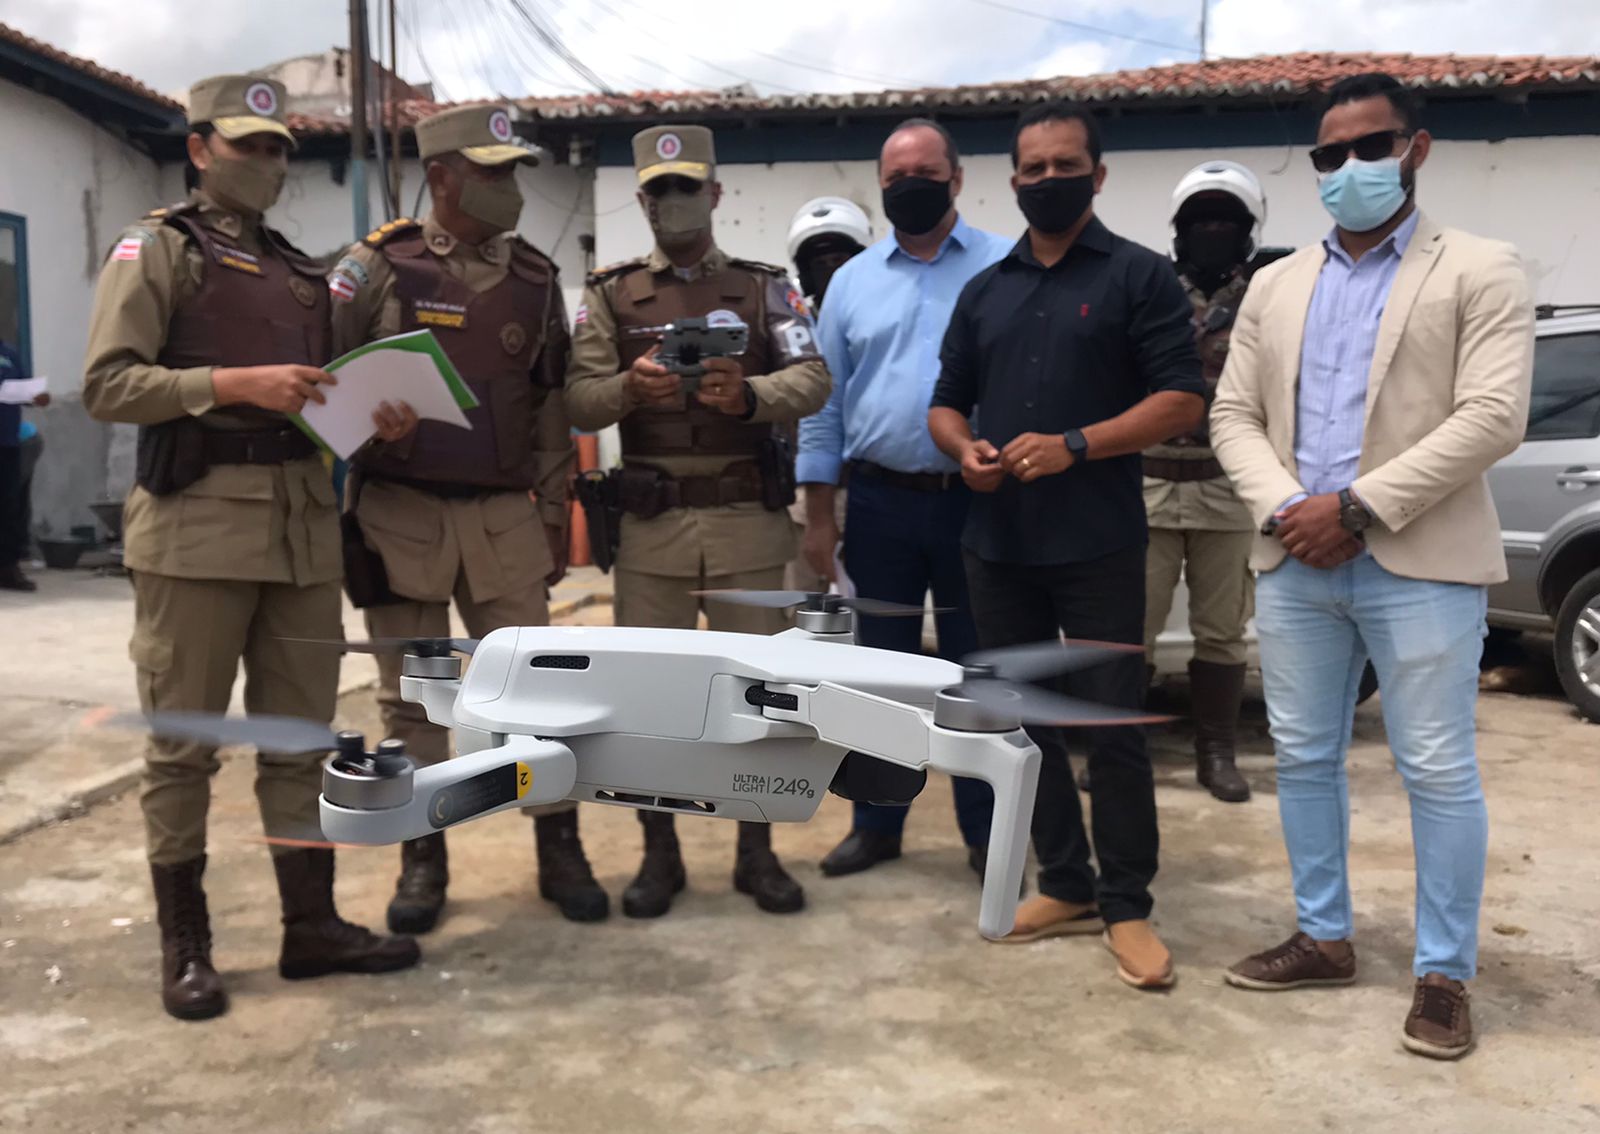 Polícia Militar reforçará policiamento ostensivo em Juazeiro com utilização de drone